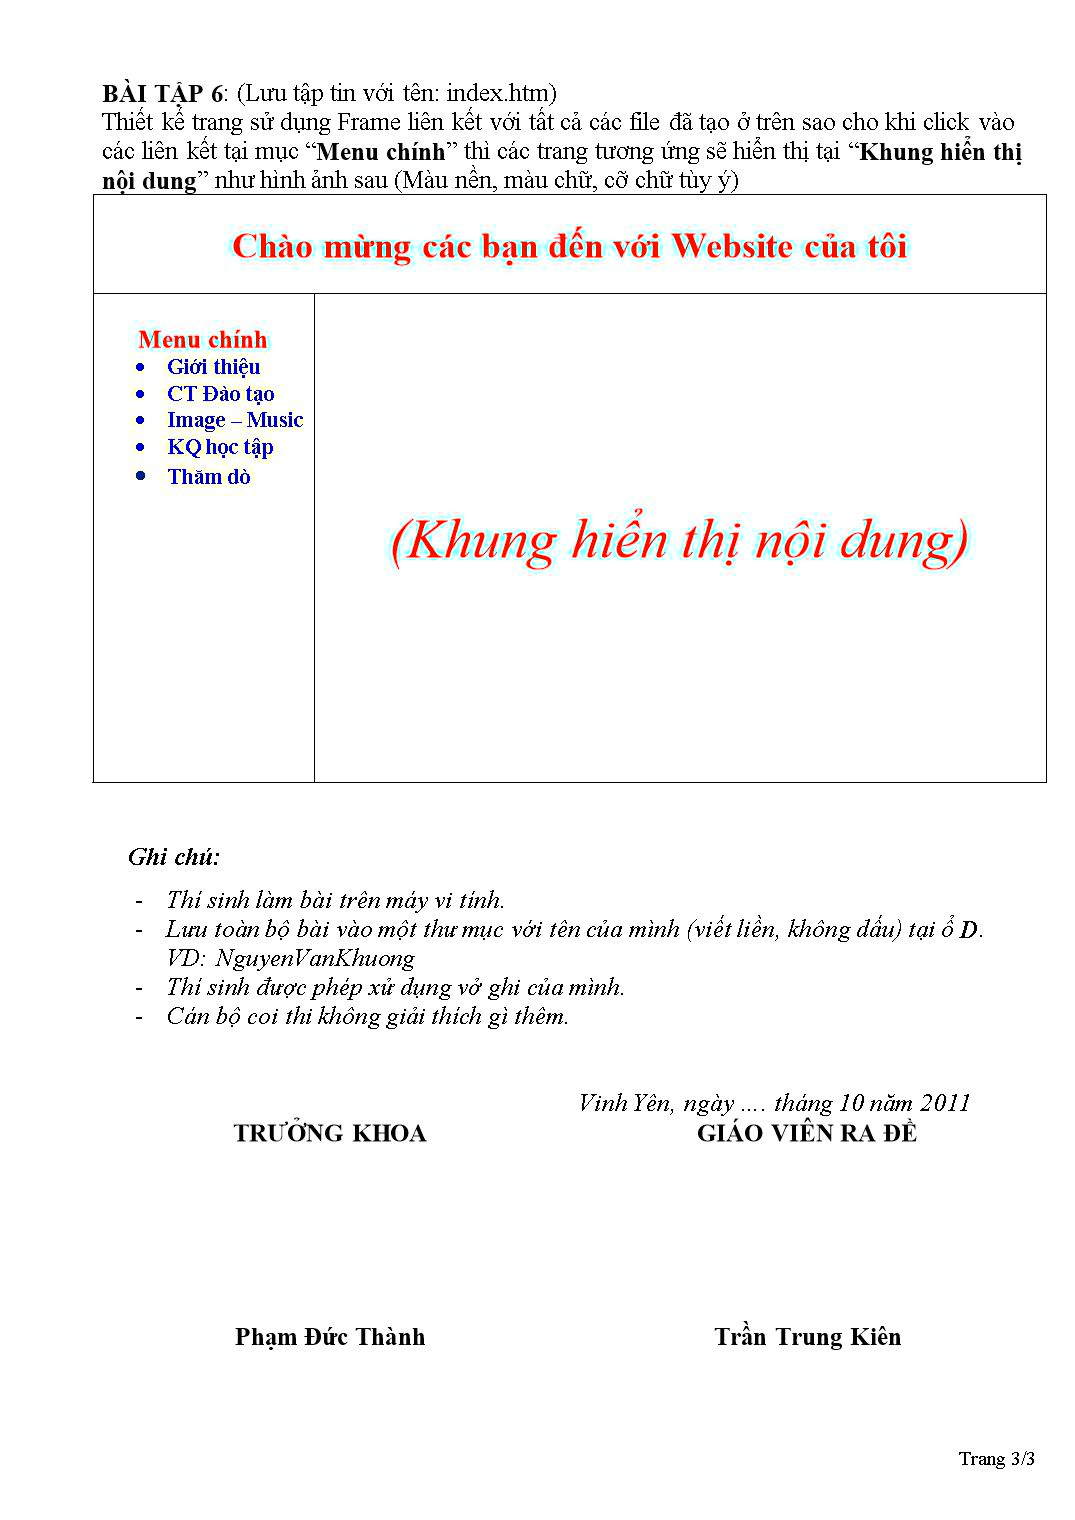 Đề thi thực hành môn Thiết kế Web - Năm học 2011-2012 trang 3